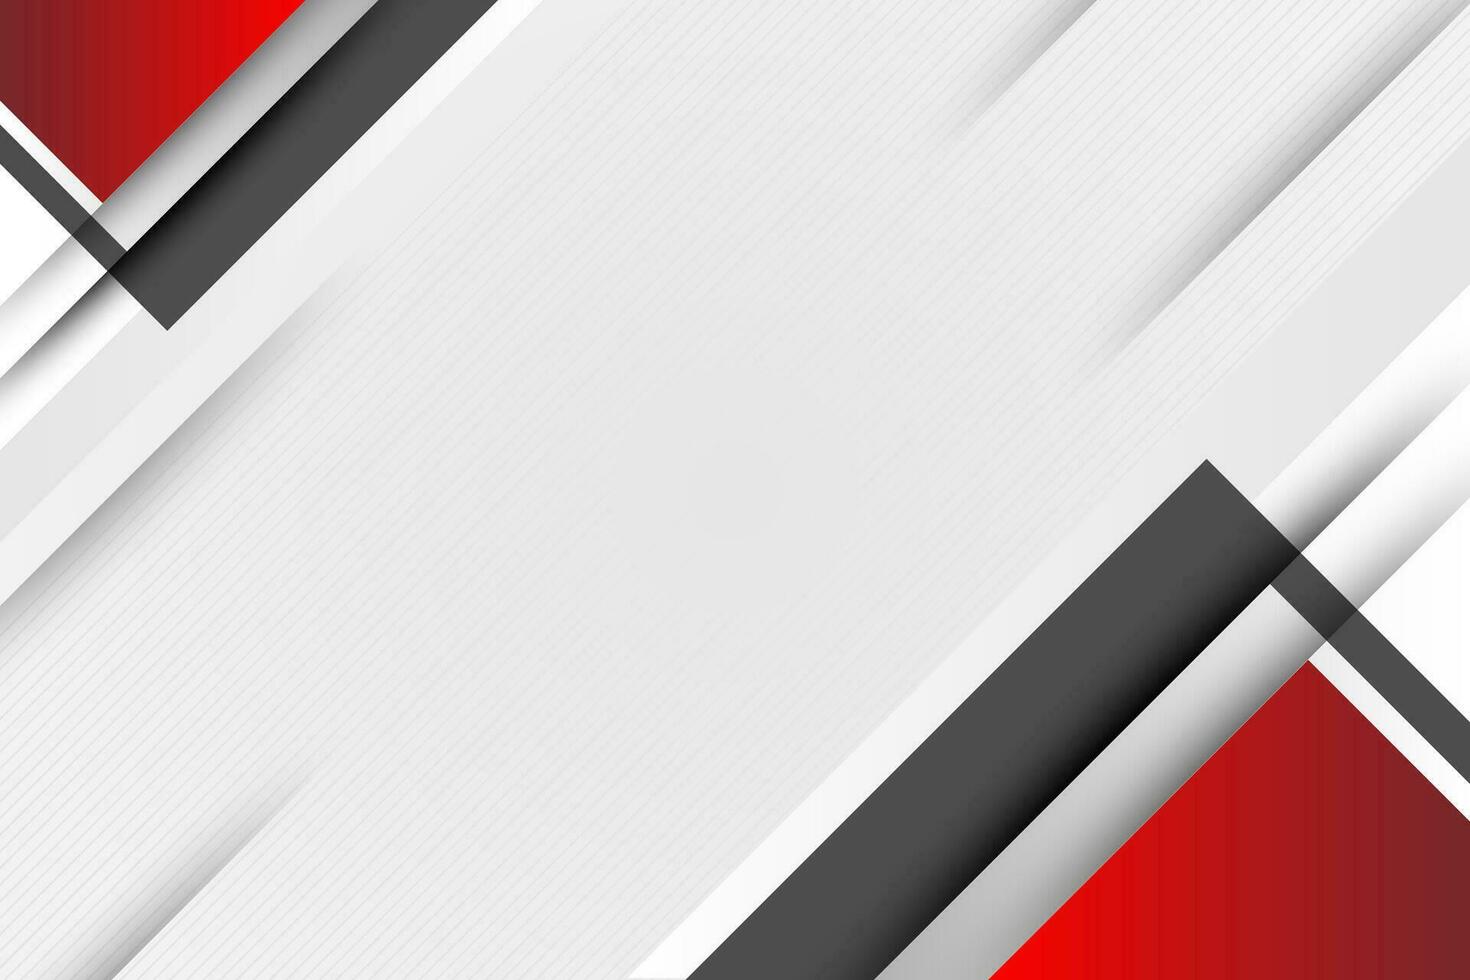 abstrakt röd grå grå vit tom Plats modern trogen bakgrund vektor illustration design. vektor illustration design för presentation, baner, omslag, webb, kort, affisch, tapet